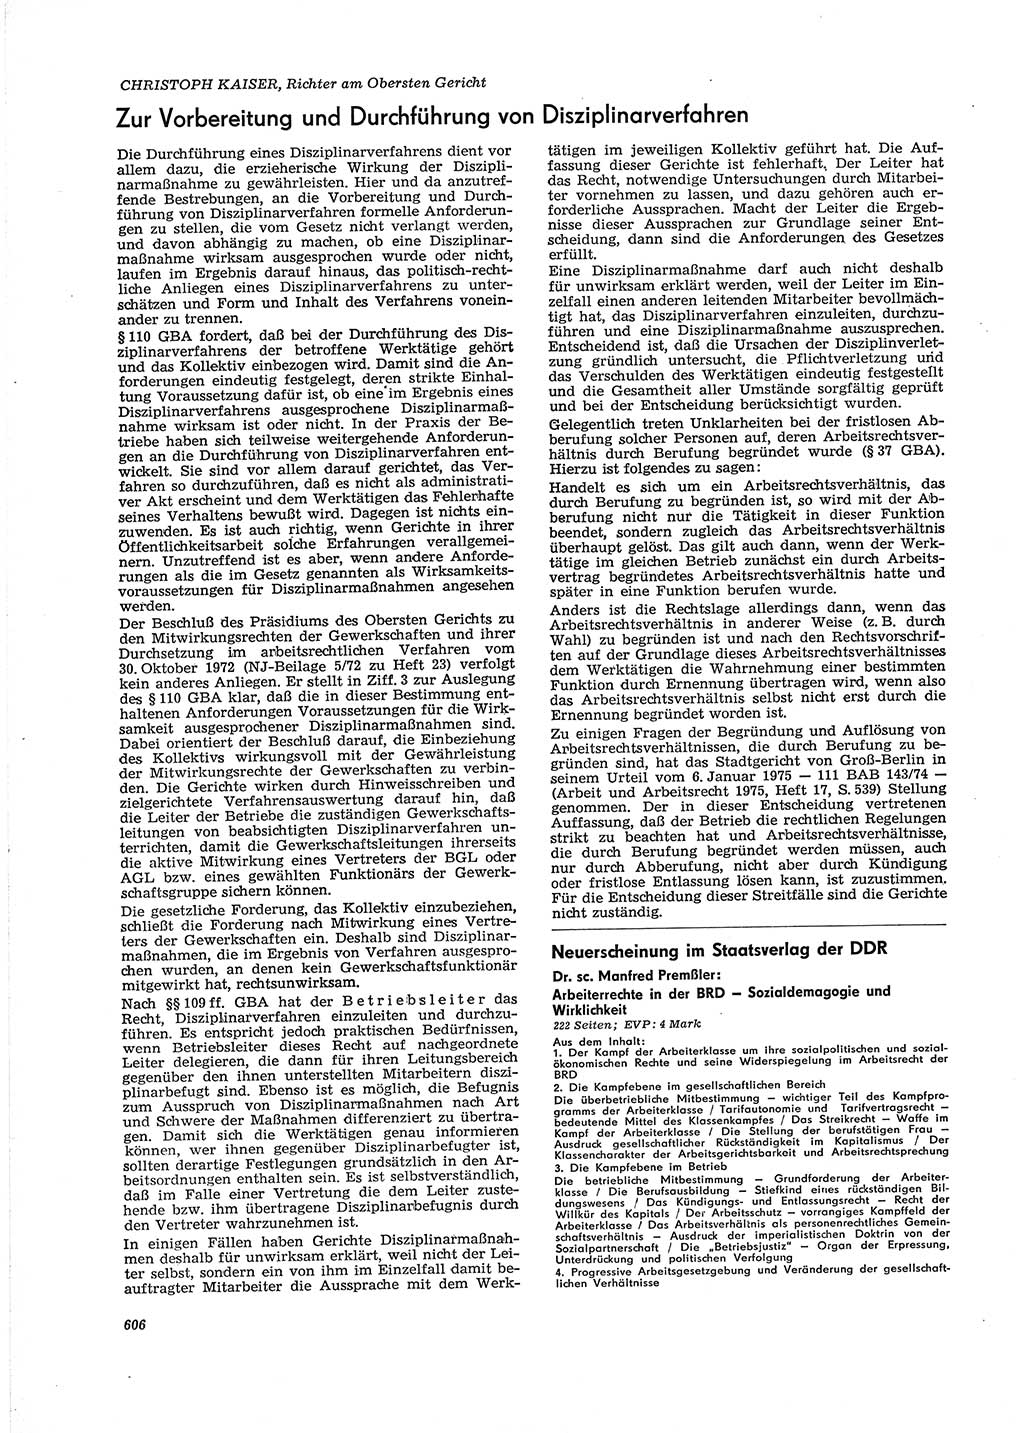 Neue Justiz (NJ), Zeitschrift für Recht und Rechtswissenschaft [Deutsche Demokratische Republik (DDR)], 29. Jahrgang 1975, Seite 606 (NJ DDR 1975, S. 606)